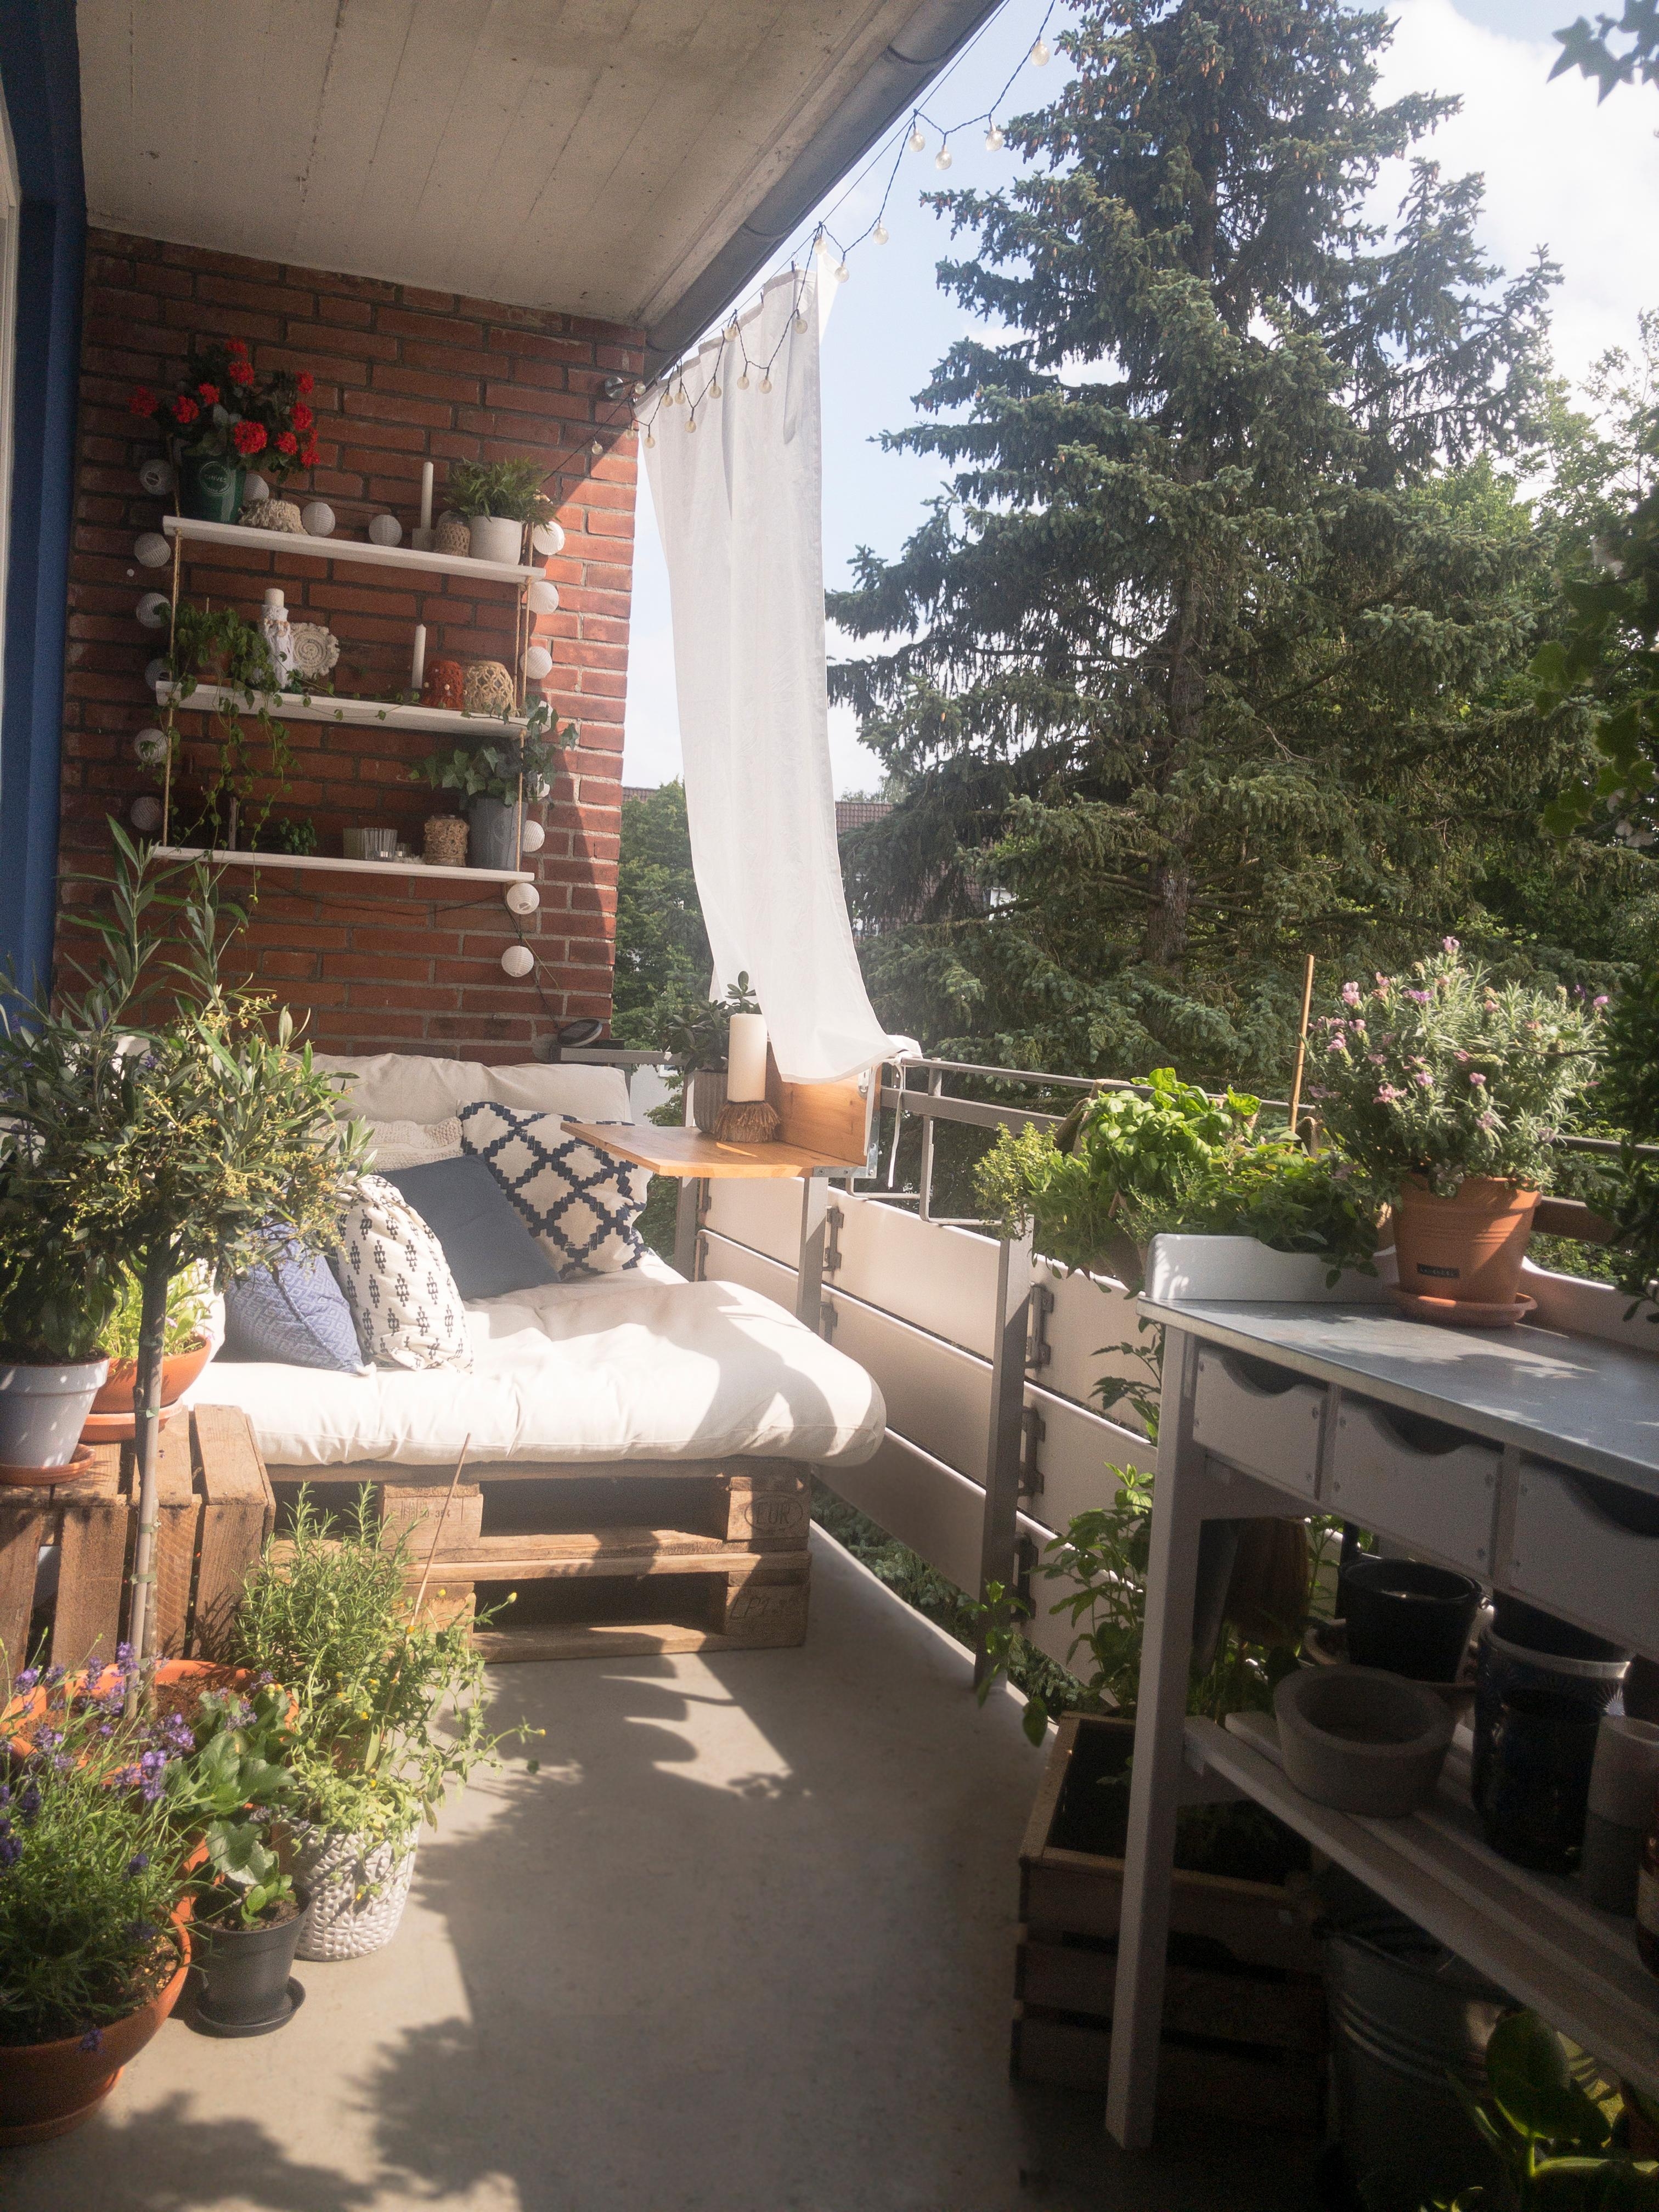 Endlich den Sommer genießen, zwar nicht in Italien aber ein Mediterranes Flair geht auch auf dem eigenen #balkon